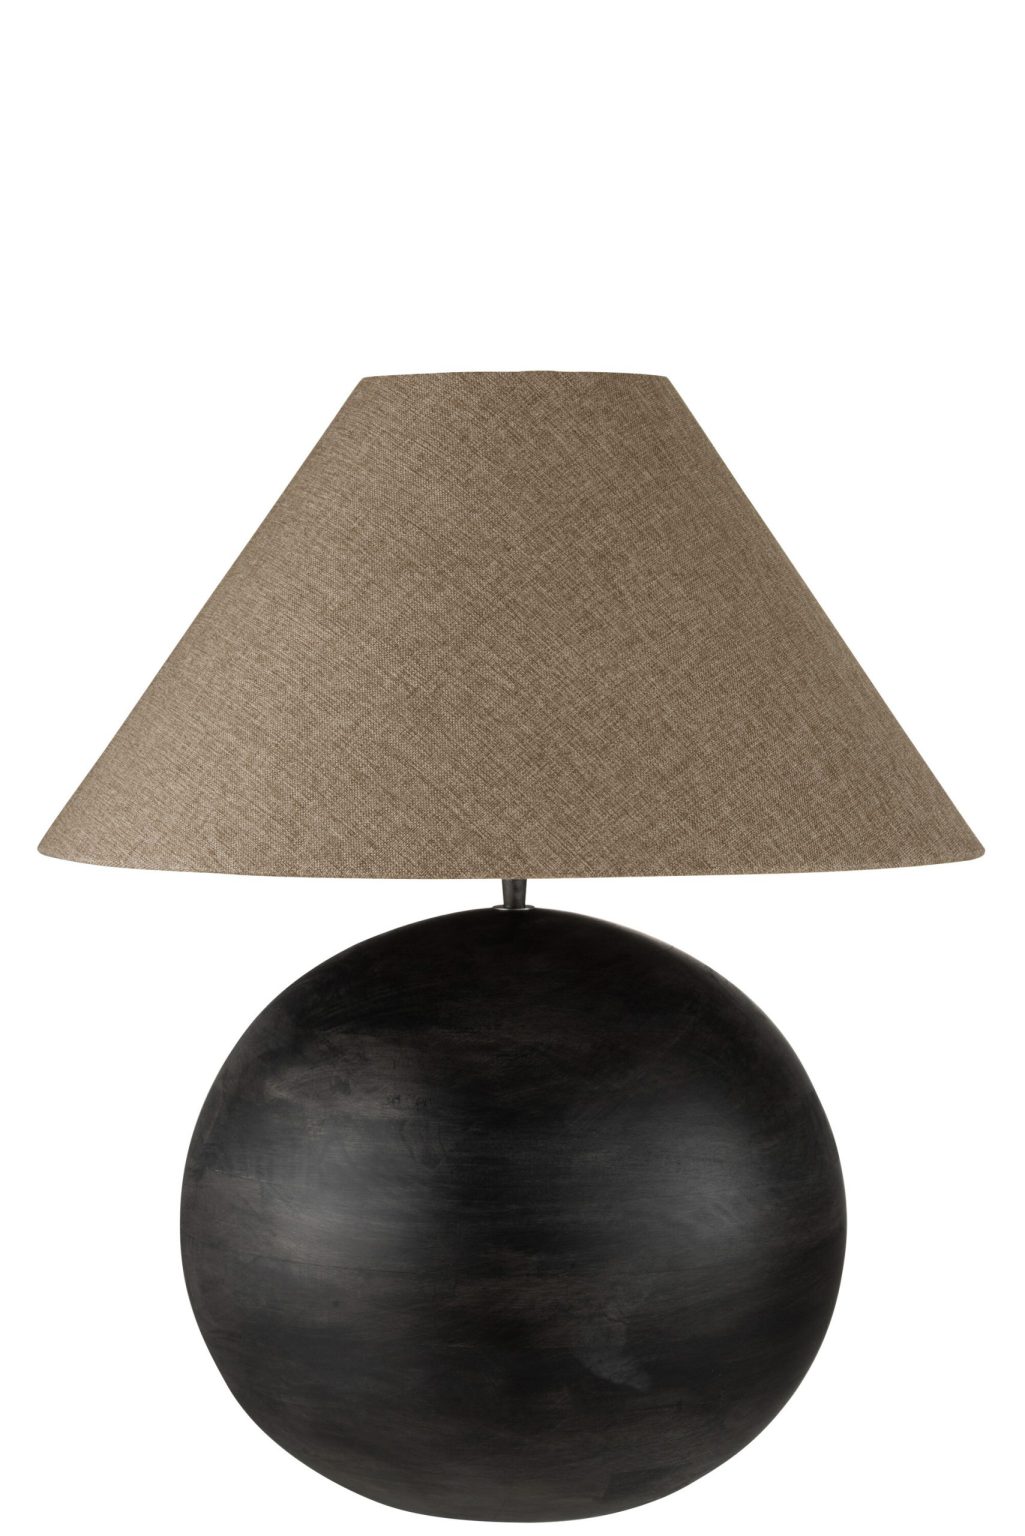 natuurlijke-beige-tafellamp-met-zwart-jolipa-mia-99009-1